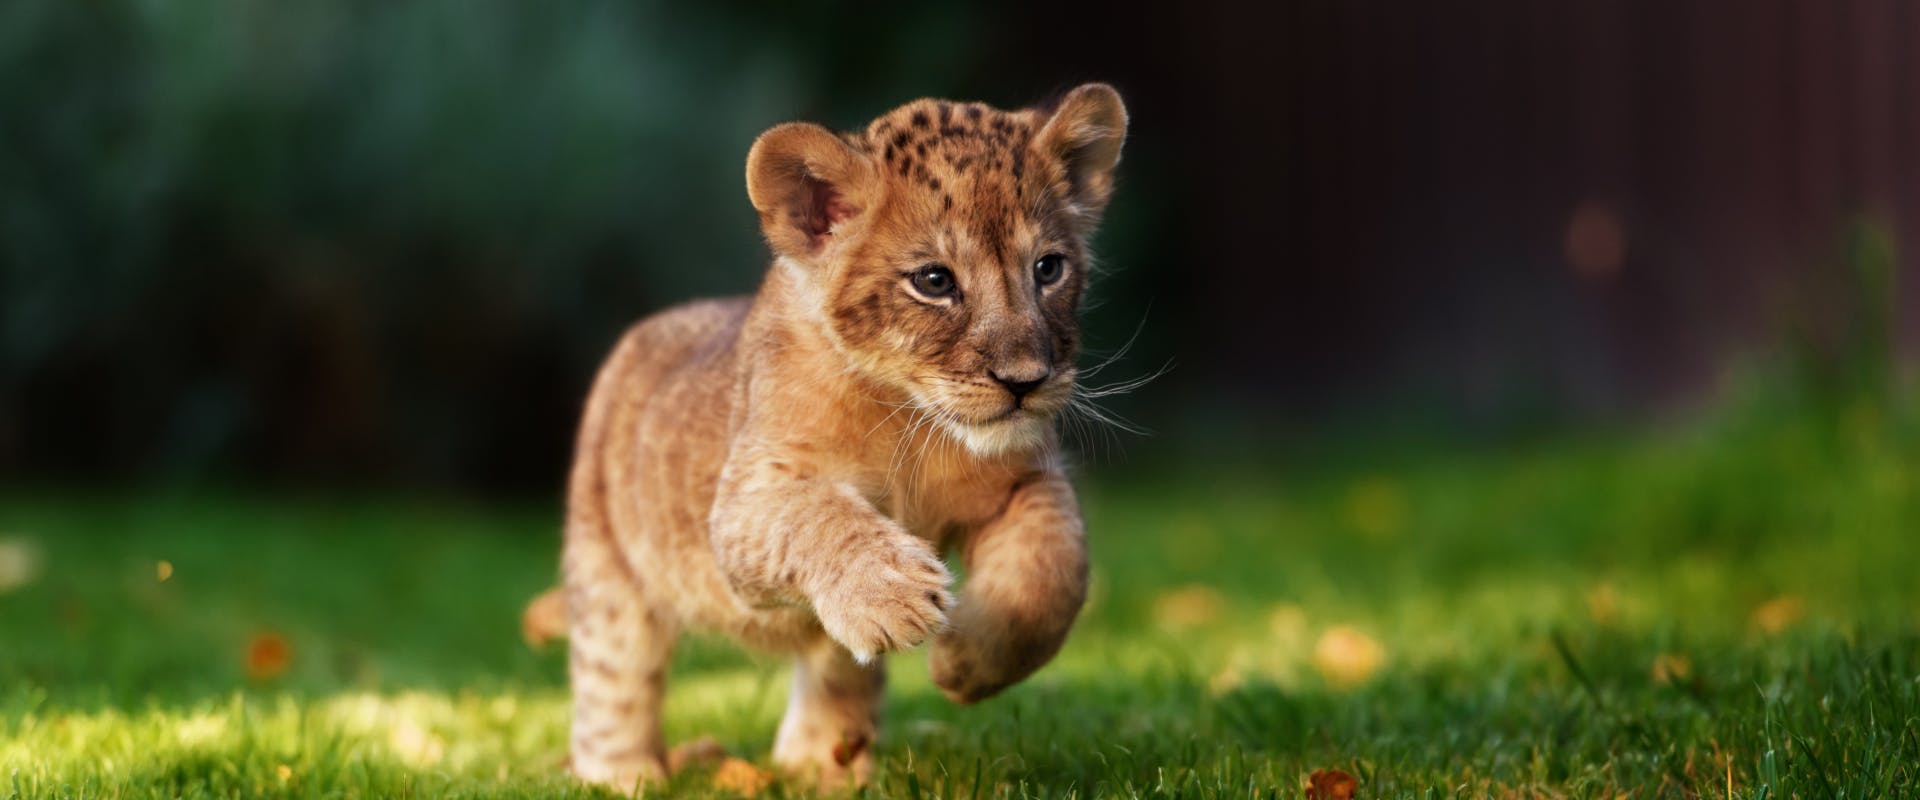 lion cub running through a grass field